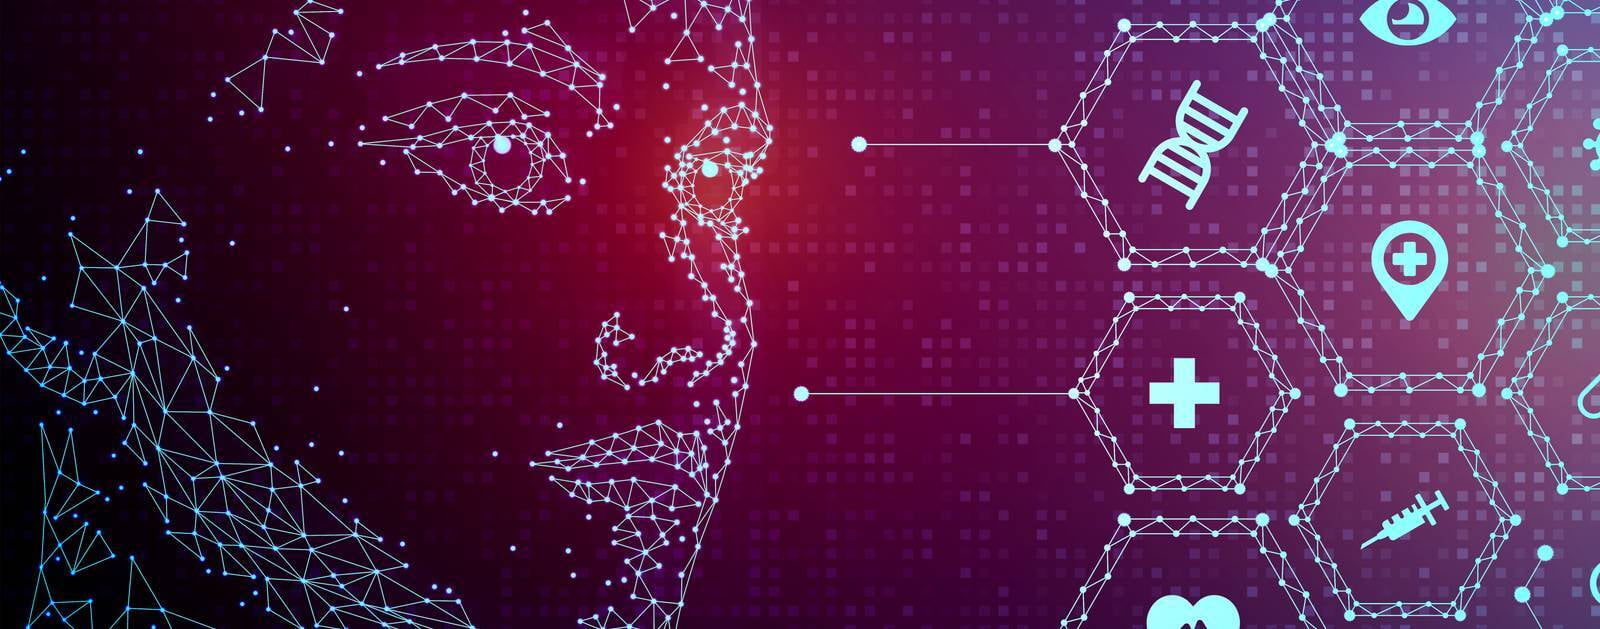 Innovación con integridad: Luzán 5 implementa un código ético en el uso de la inteligencia artificial